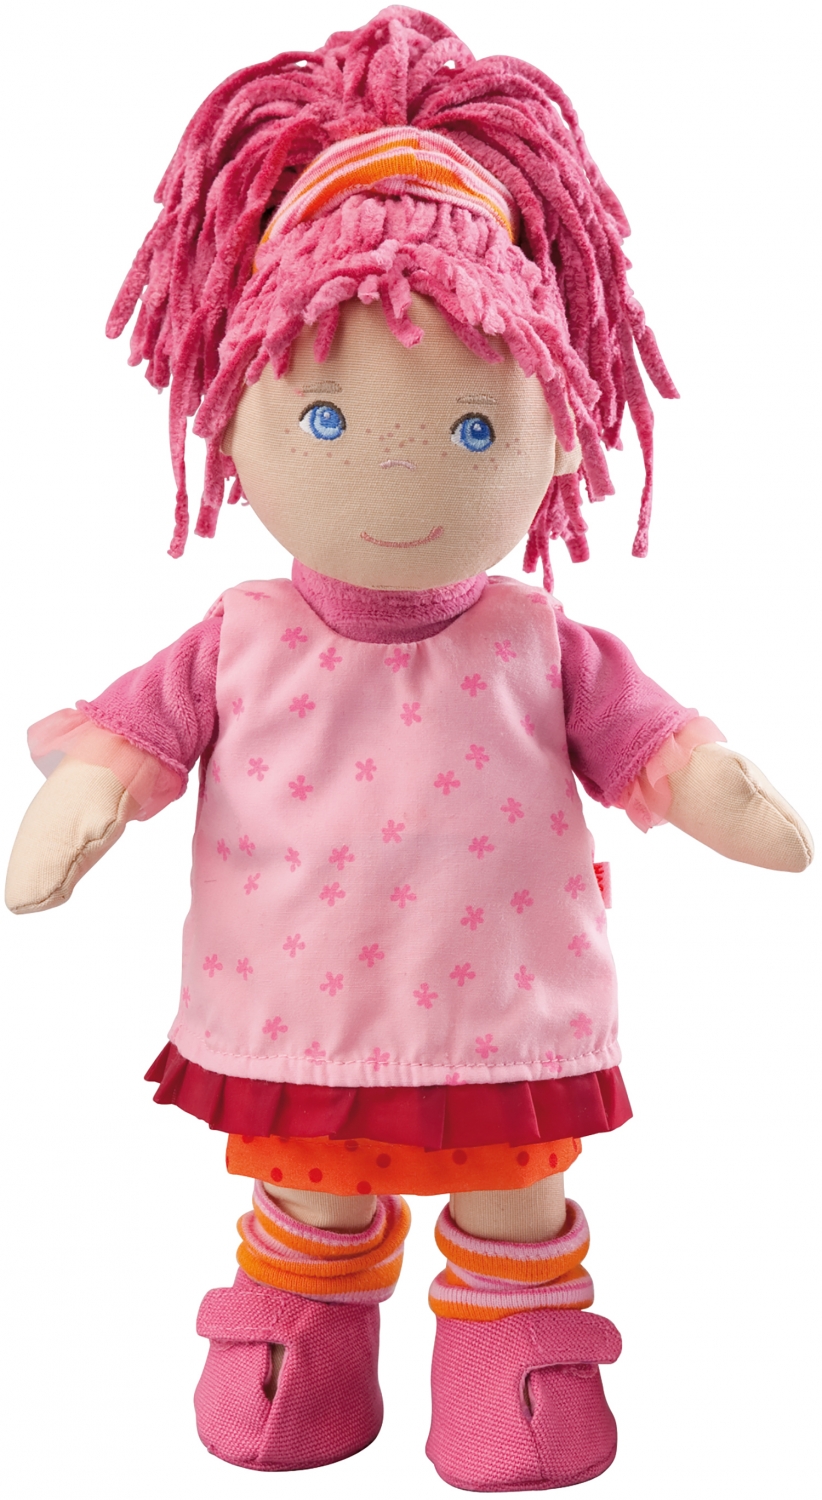 U kunt hier uw Lilli Soft Doll kopen! Bestel eenvoudig en snel online